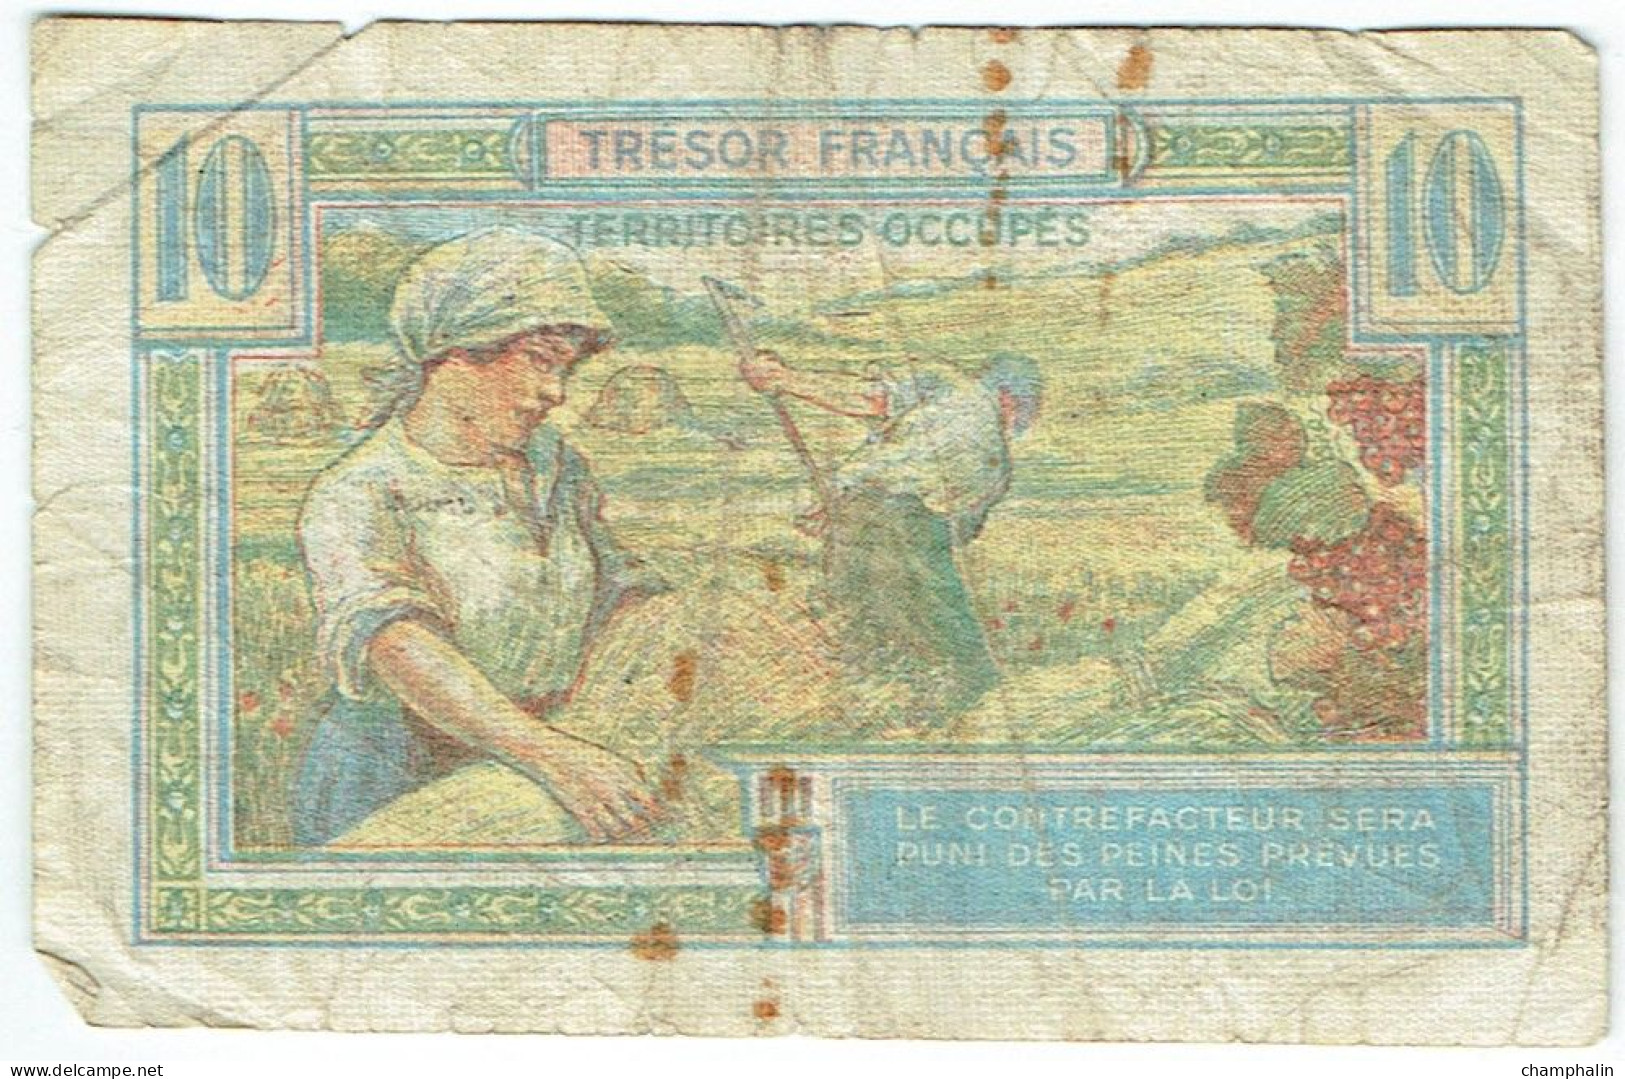 France - Billet De 10 Francs - Trésor Français - Territoires Occupés - 1947 Staatskasse Frankreich